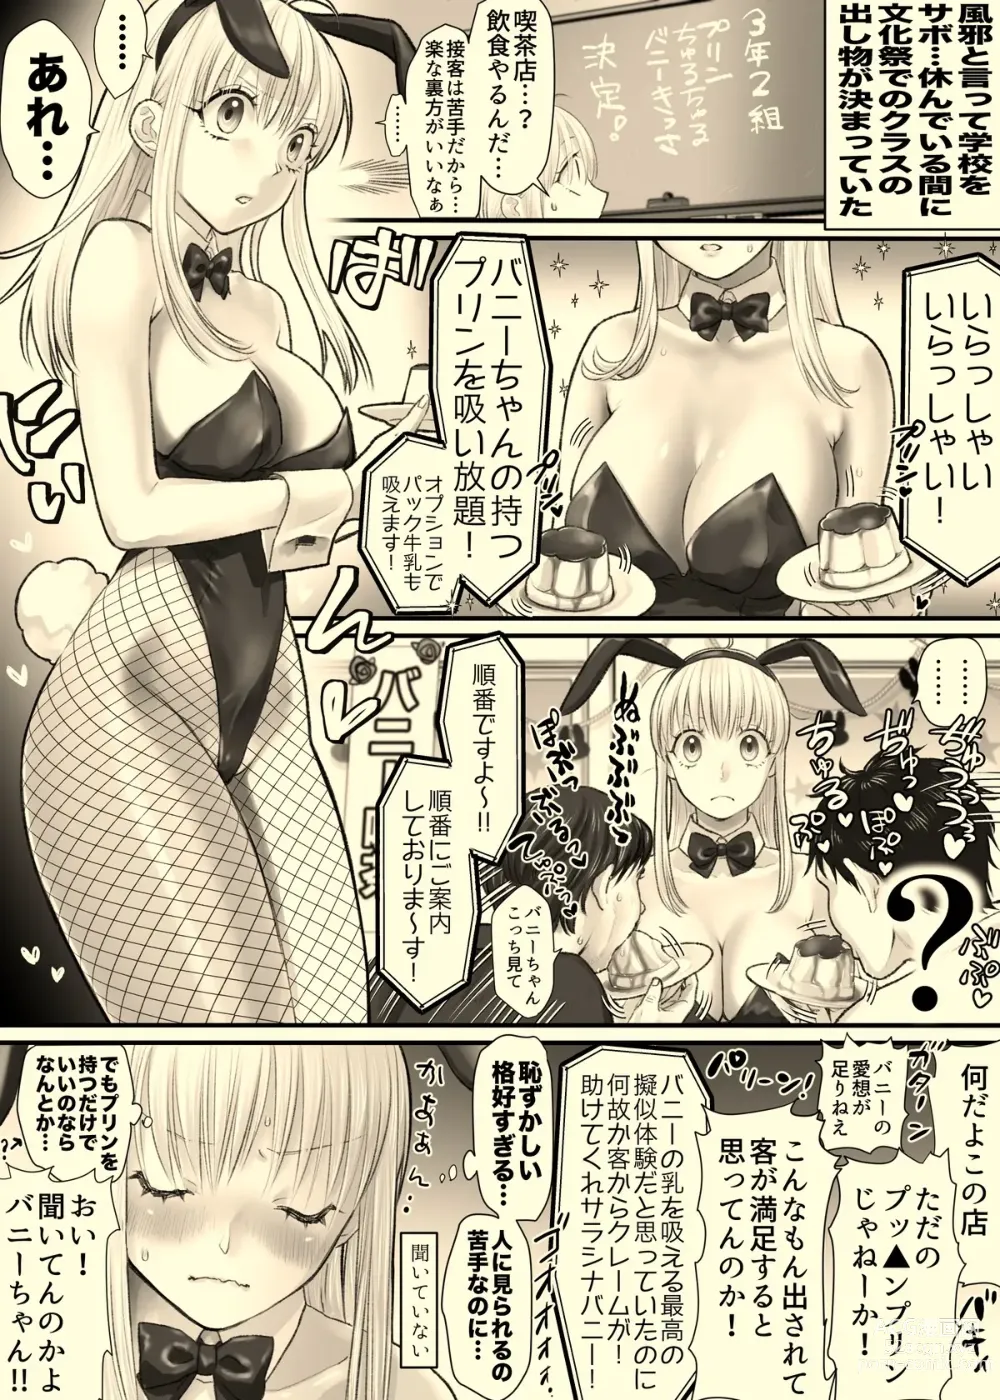 Page 1 of doujinshi Nika Ga Bunny Girl.